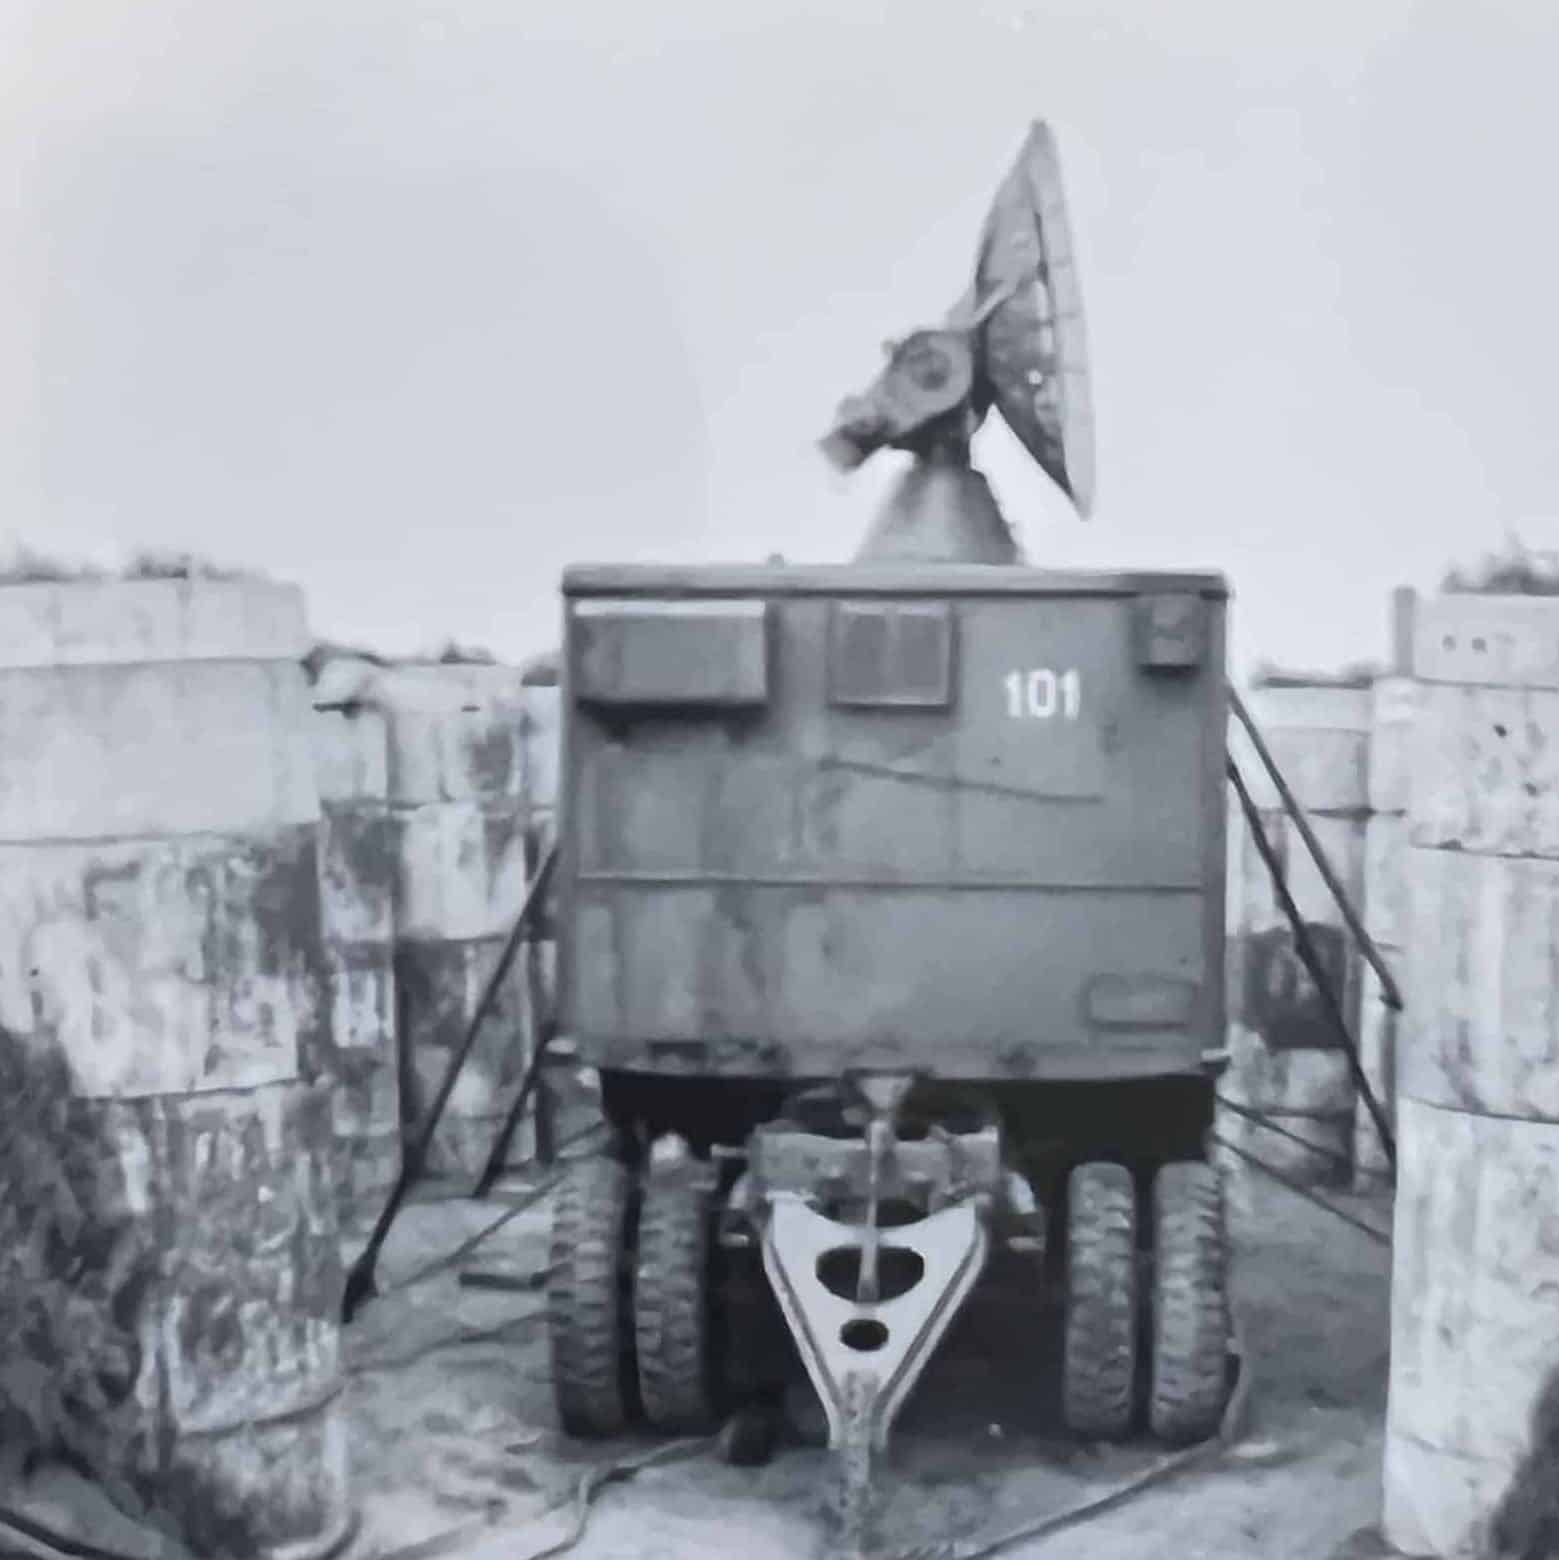 Radar opstillet under øvelse - midt 1960erne